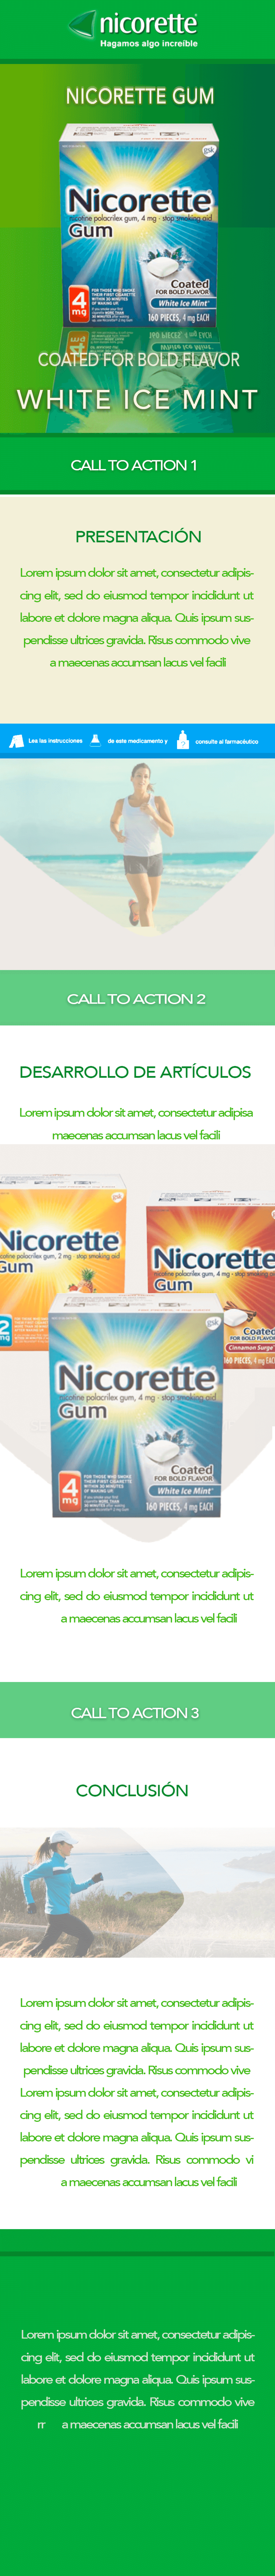 Propuestas Newsletter Nicorette Gum 2